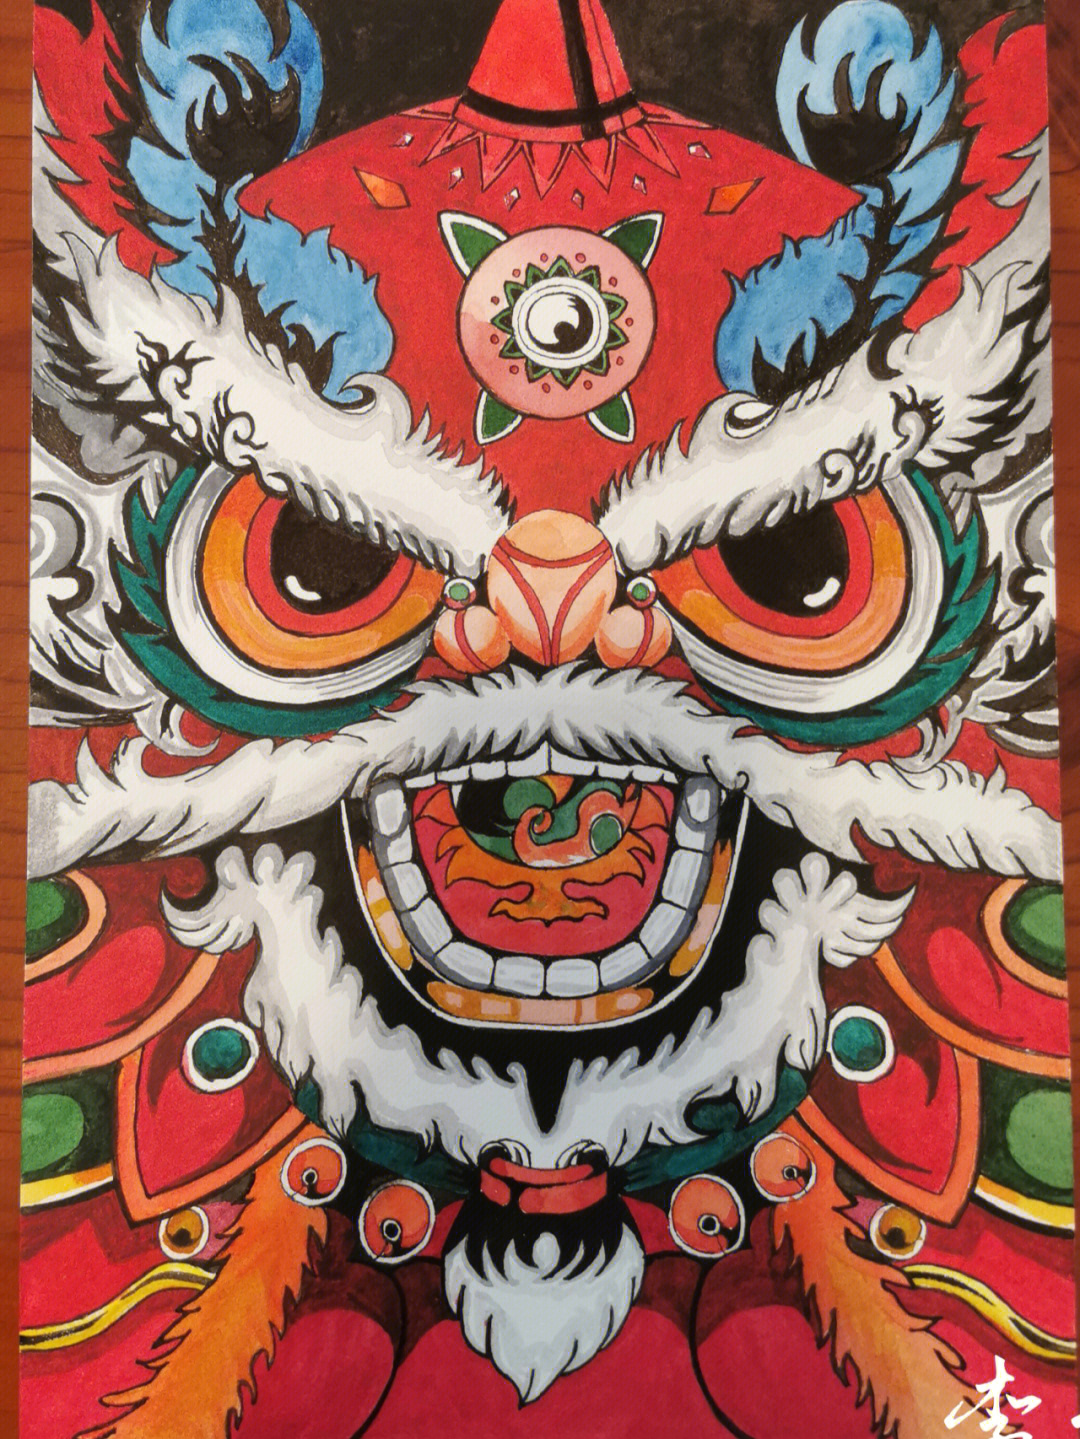 时间画了一张醒狮图,材料:水彩,八开水彩纸最近特别喜欢中国潮的画